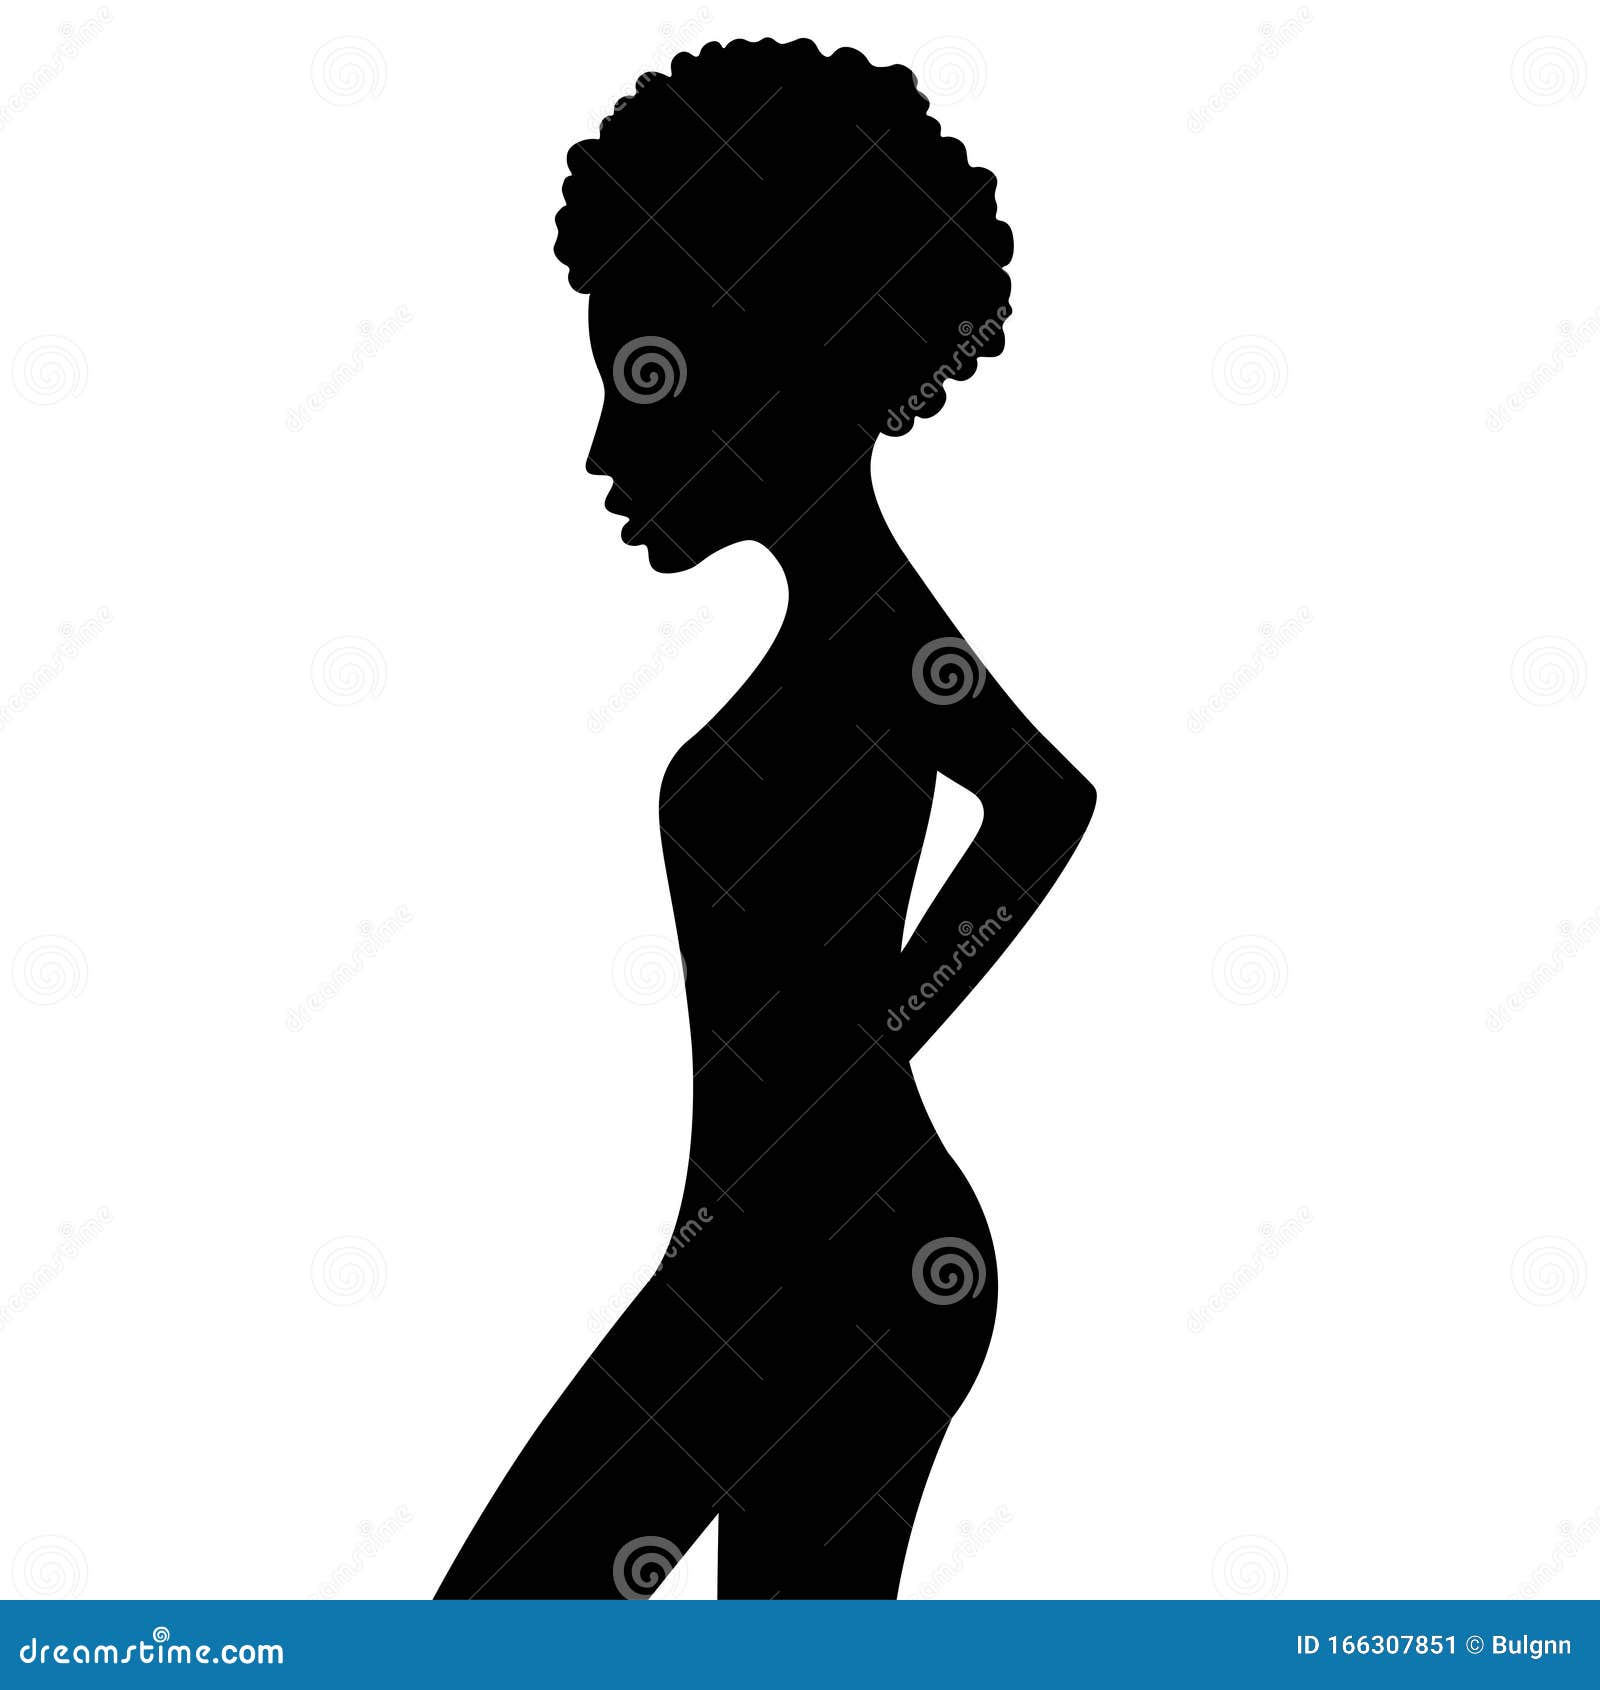 https://thumbs.dreamstime.com/z/silhueta-negra-de-mulher-africana-encaracolada-retrato-no-perfil-ilustra%C3%A7%C3%A3o-eps-vetorial-166307851.jpg